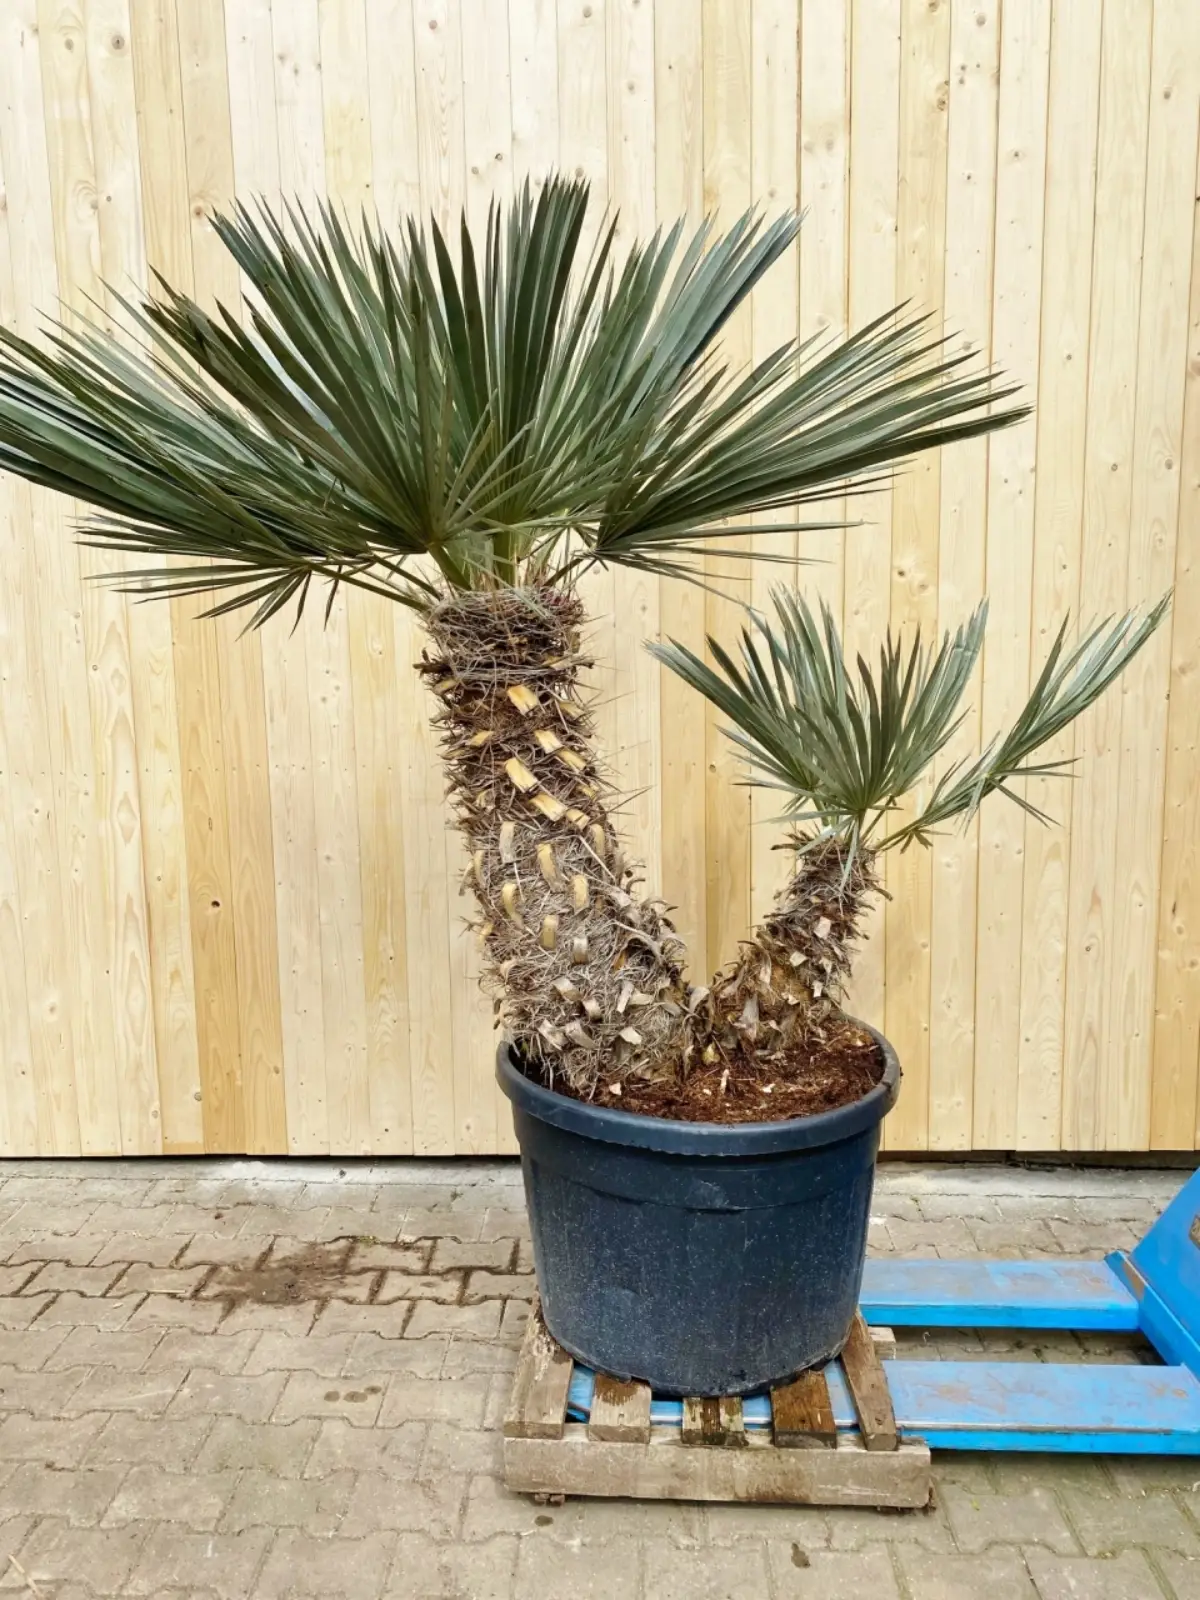 eingepflanzte palme winterfest machen blaue nadelpalme im kuebel ueberwintern